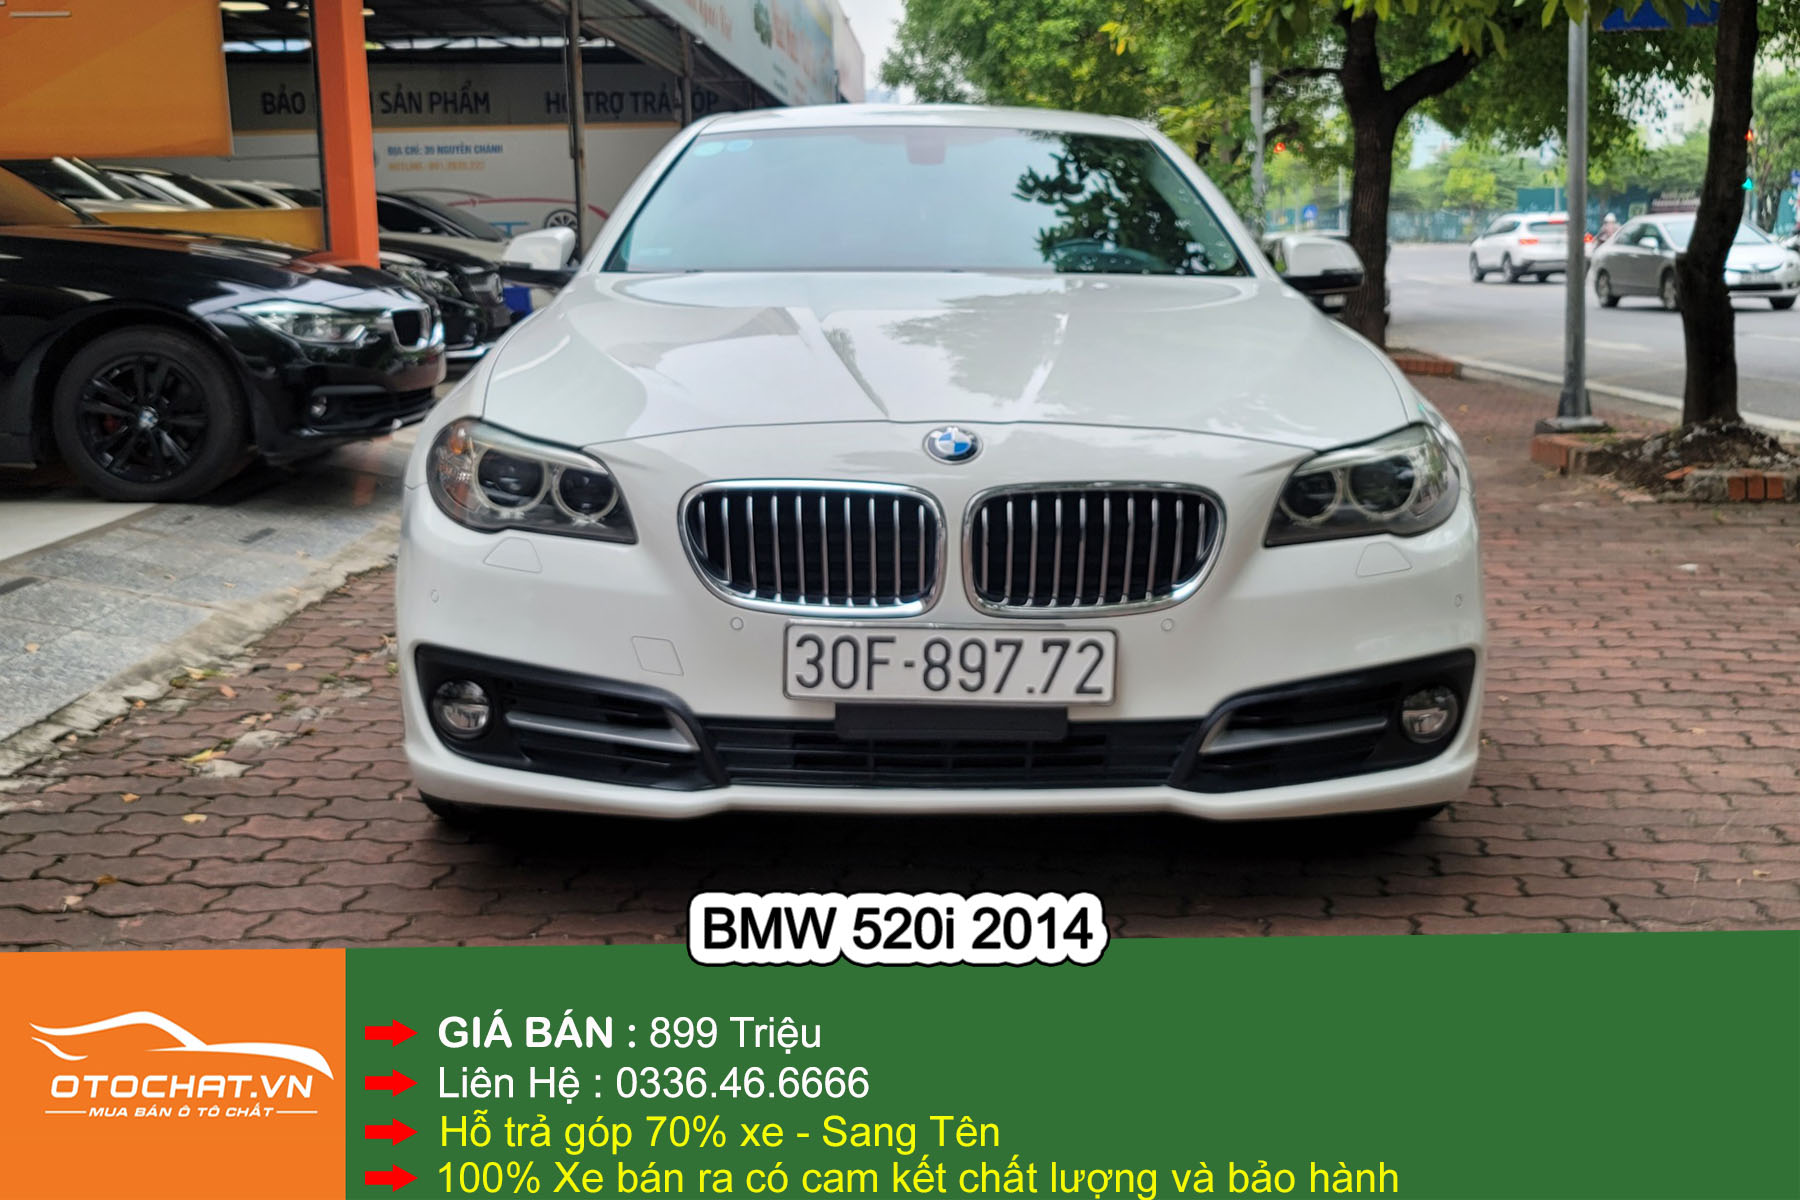 BMW 5Series 2021 được ra mắt tại Thái Lan giá từ 100166 USD  Ôtô